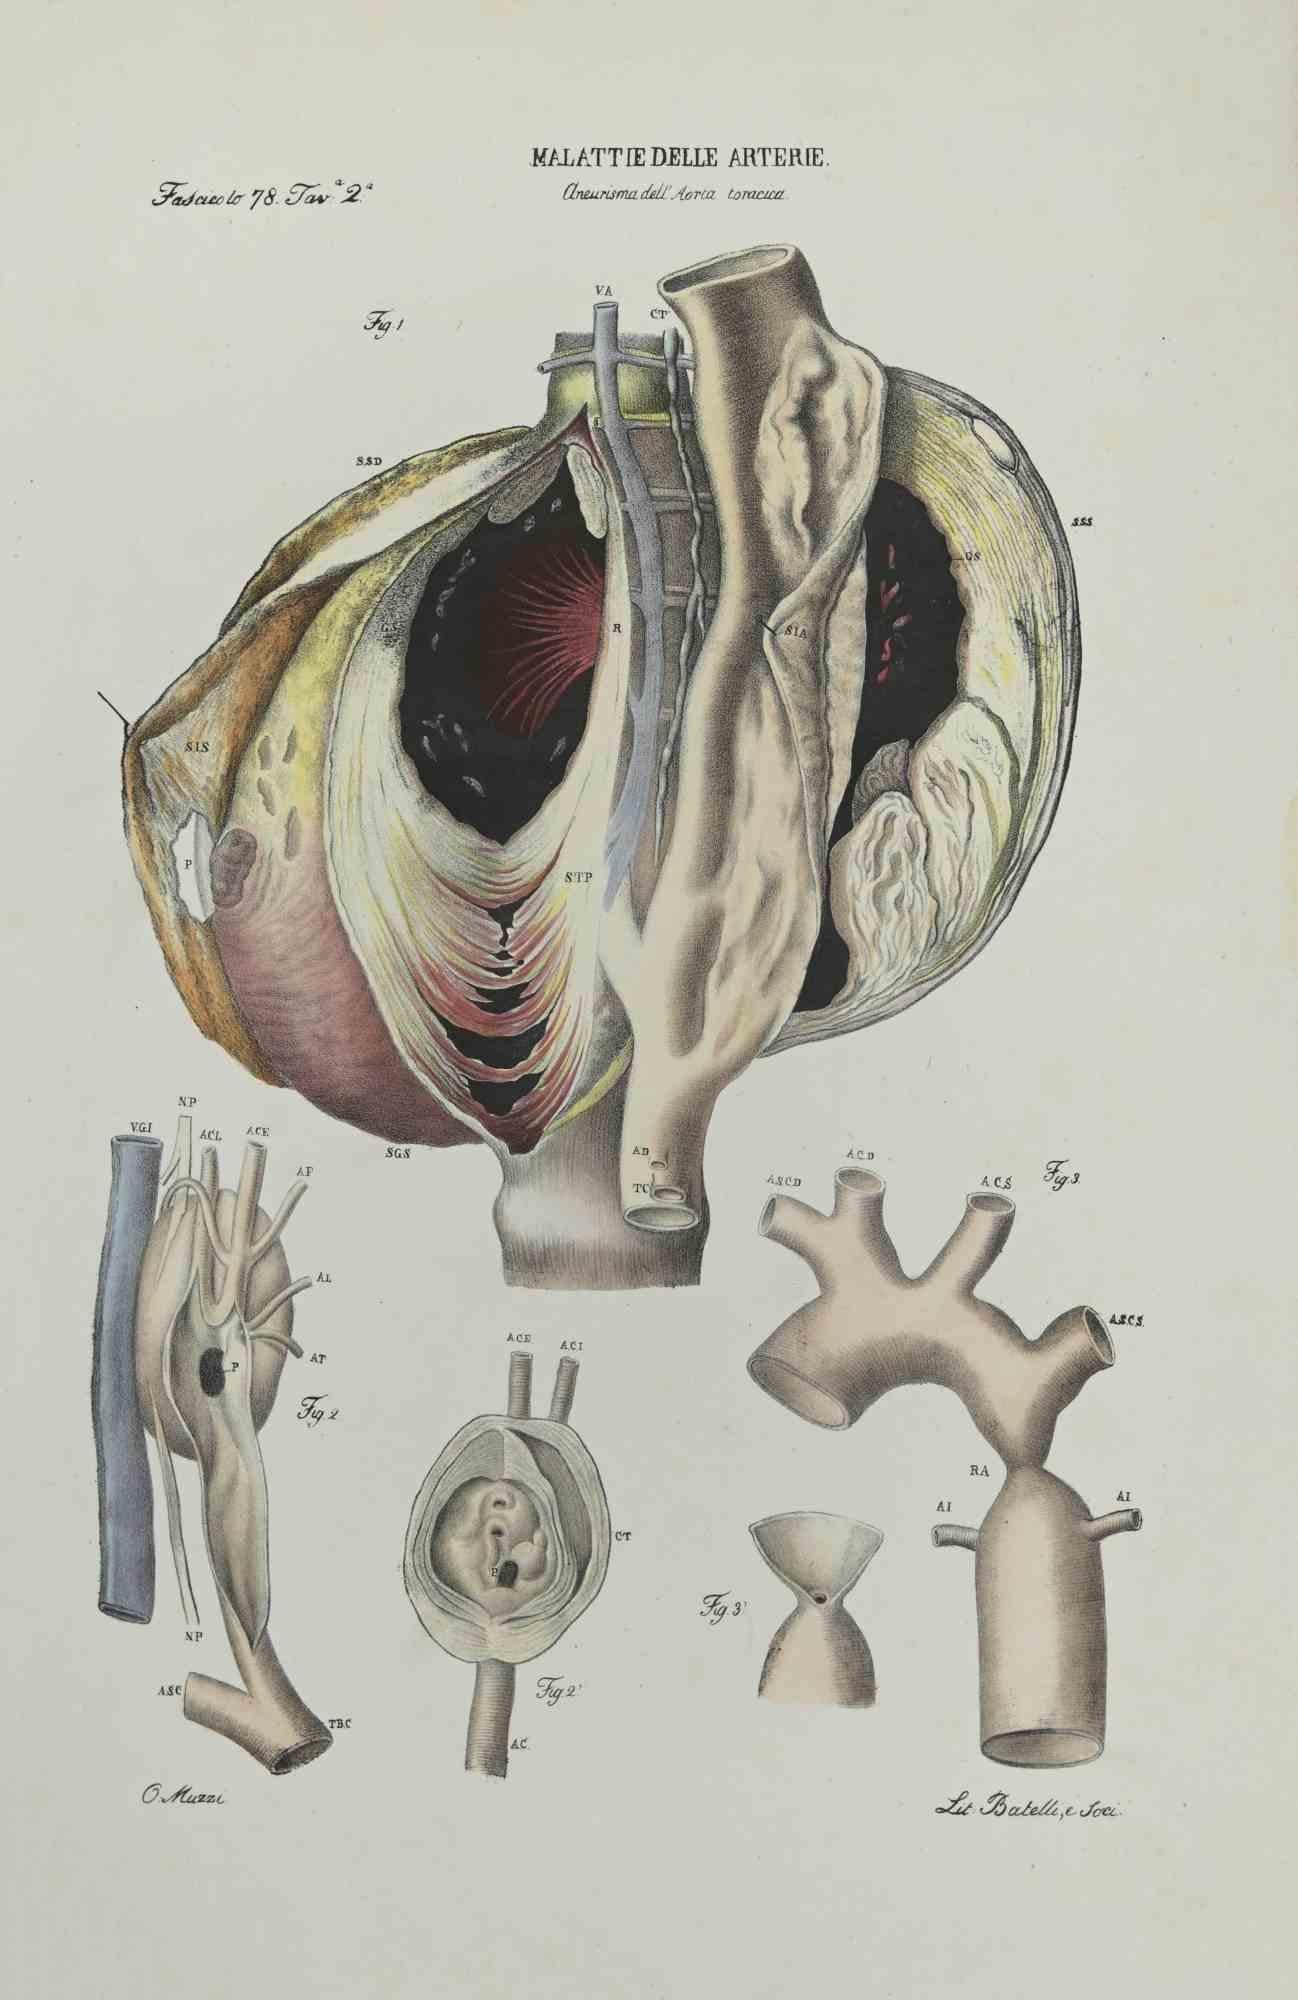 Artery Disease ist eine handkolorierte Lithographie von Ottavio Muzzi für die Ausgabe von Antoine Chazal, Human Deseases, Printers Batelli and Ridolfi, 1843.

Das Werk gehört zum Atlante generale della anatomia patologica del corpo umano von Jean